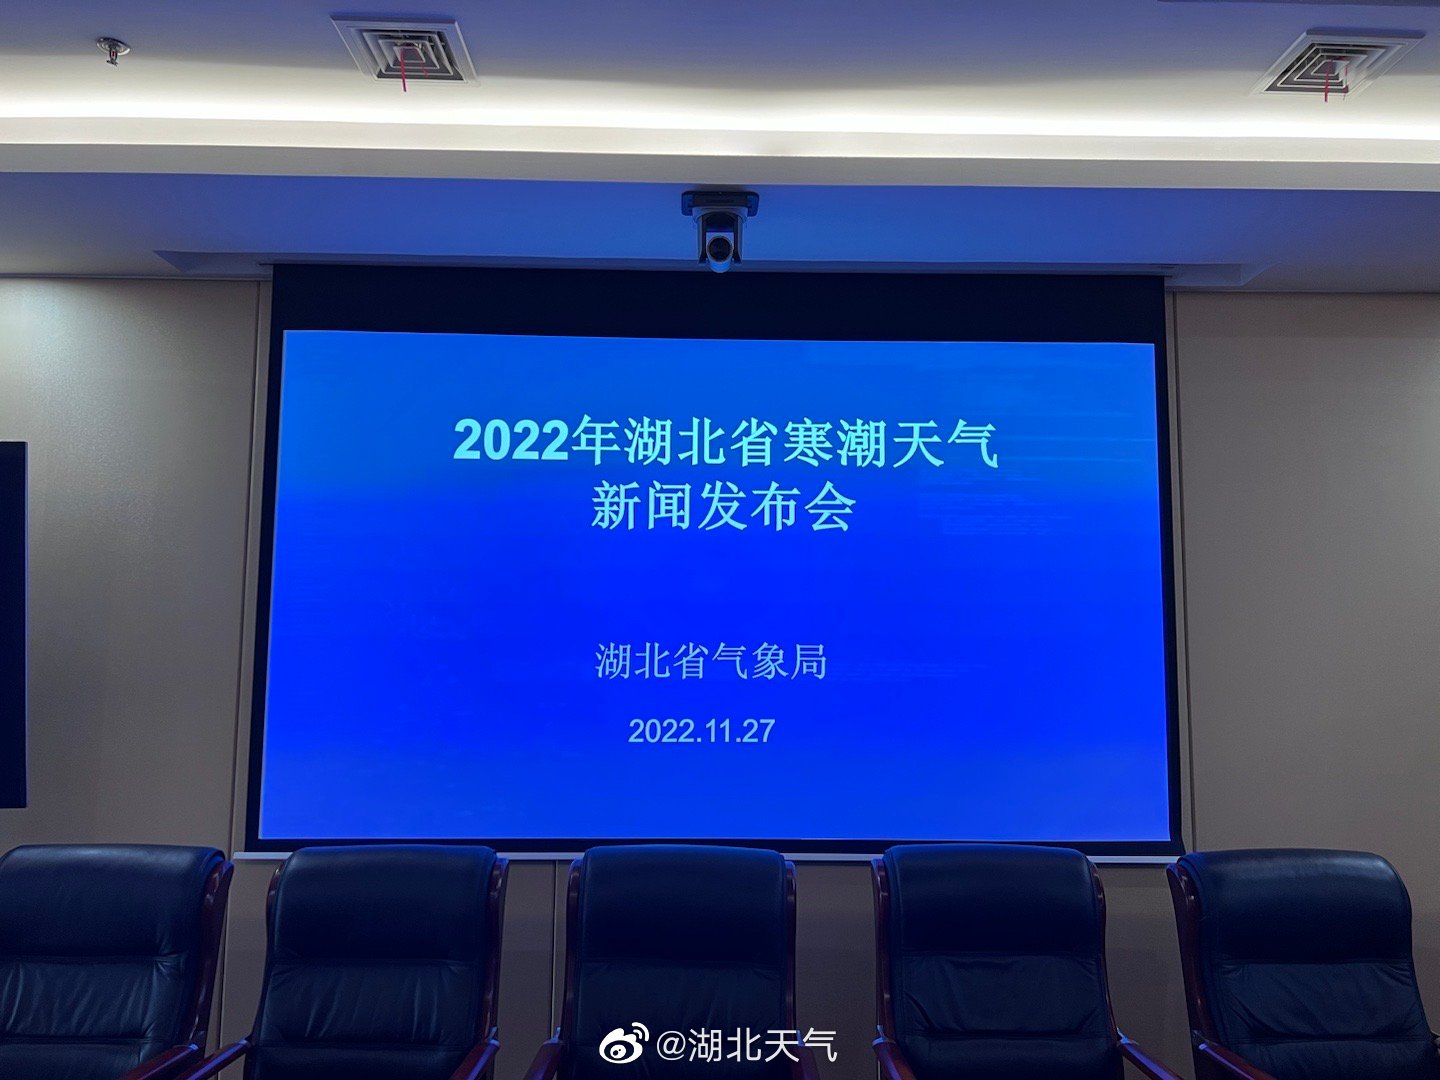 今天上午11点，@湖北天气 将进行2022年湖北省寒潮天气新闻发布会